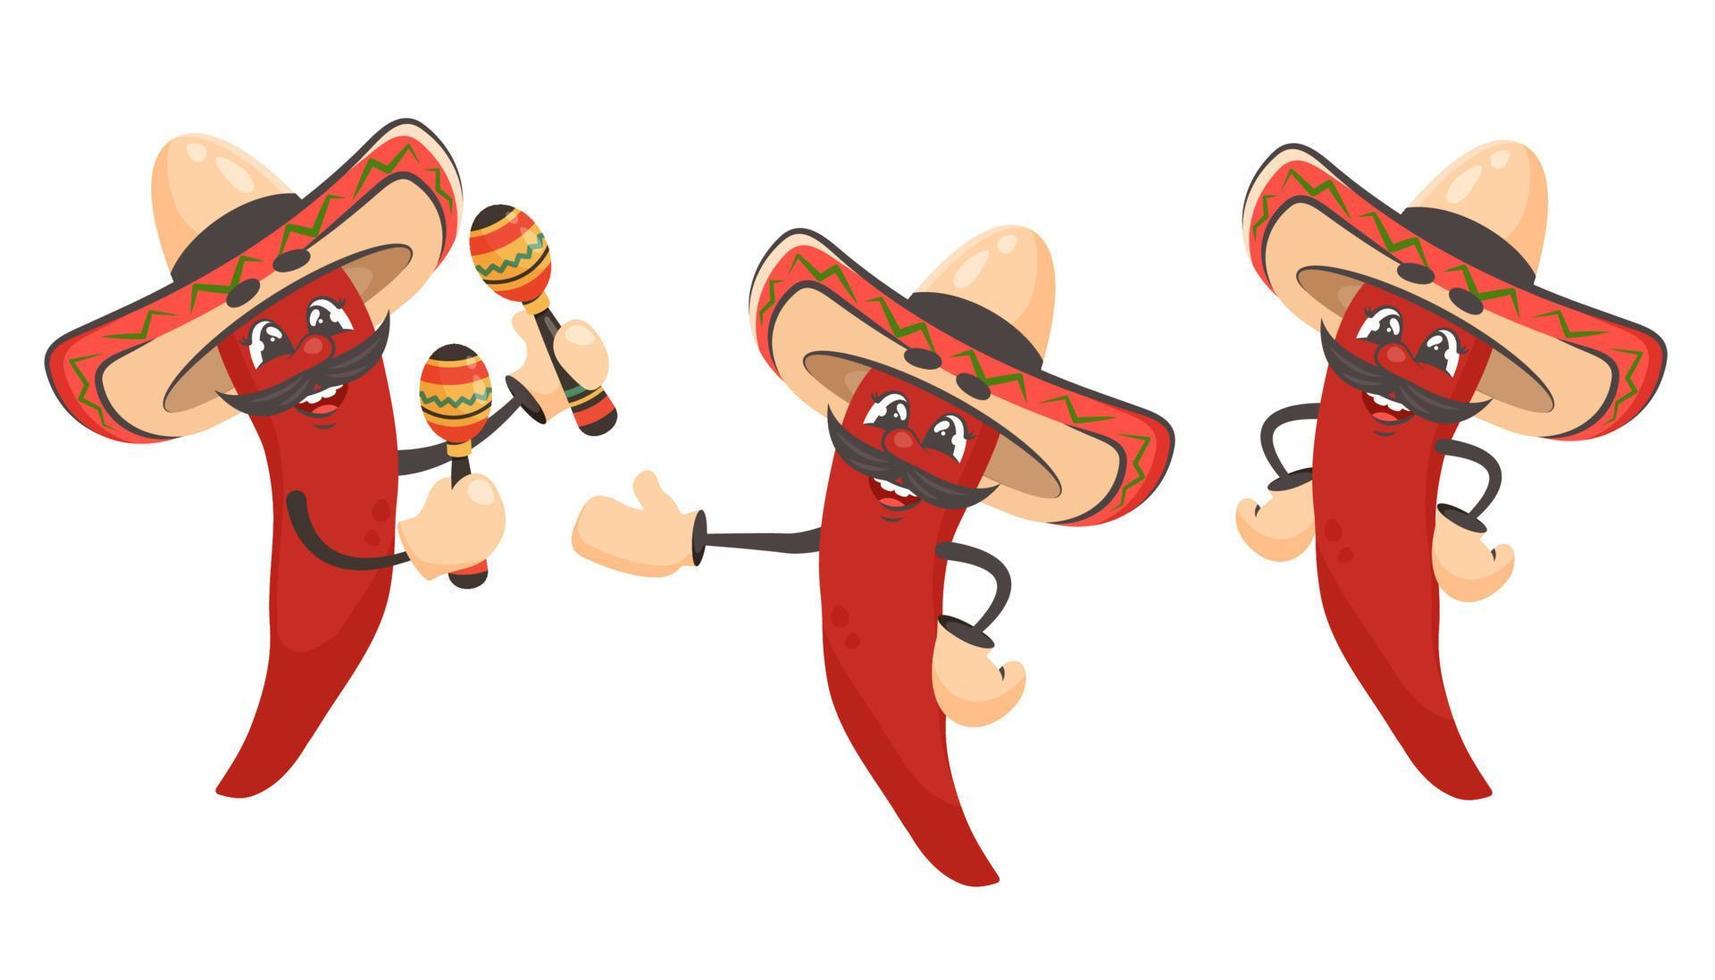 Satz rote Chilischote isoliert. Zeichentrickfigur mit Sombrero, Maracas. mexikanische Nahrung. gekritzel gezeichnete vektorillustration für gerichte, menü, poster, flyer, banner, lieferung, kochkonzept vektor